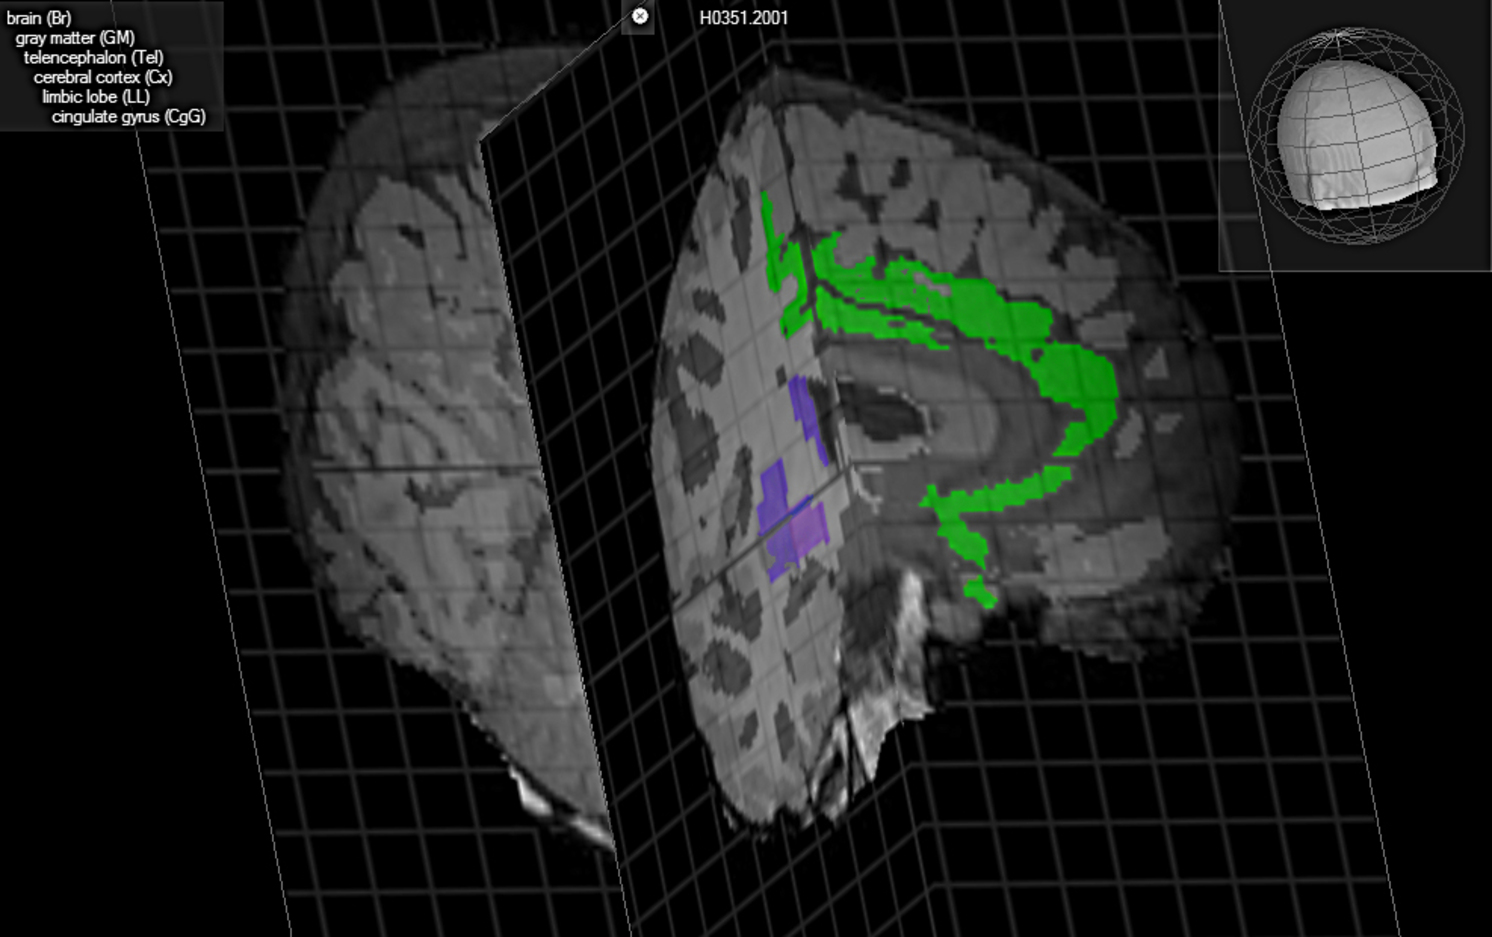 En esta representación del cerebro, aparece en azul la ubicación del claustrum, posible eslabón perdido de la consciencia. Brain Explorer, Allen Institute for Brain Science.